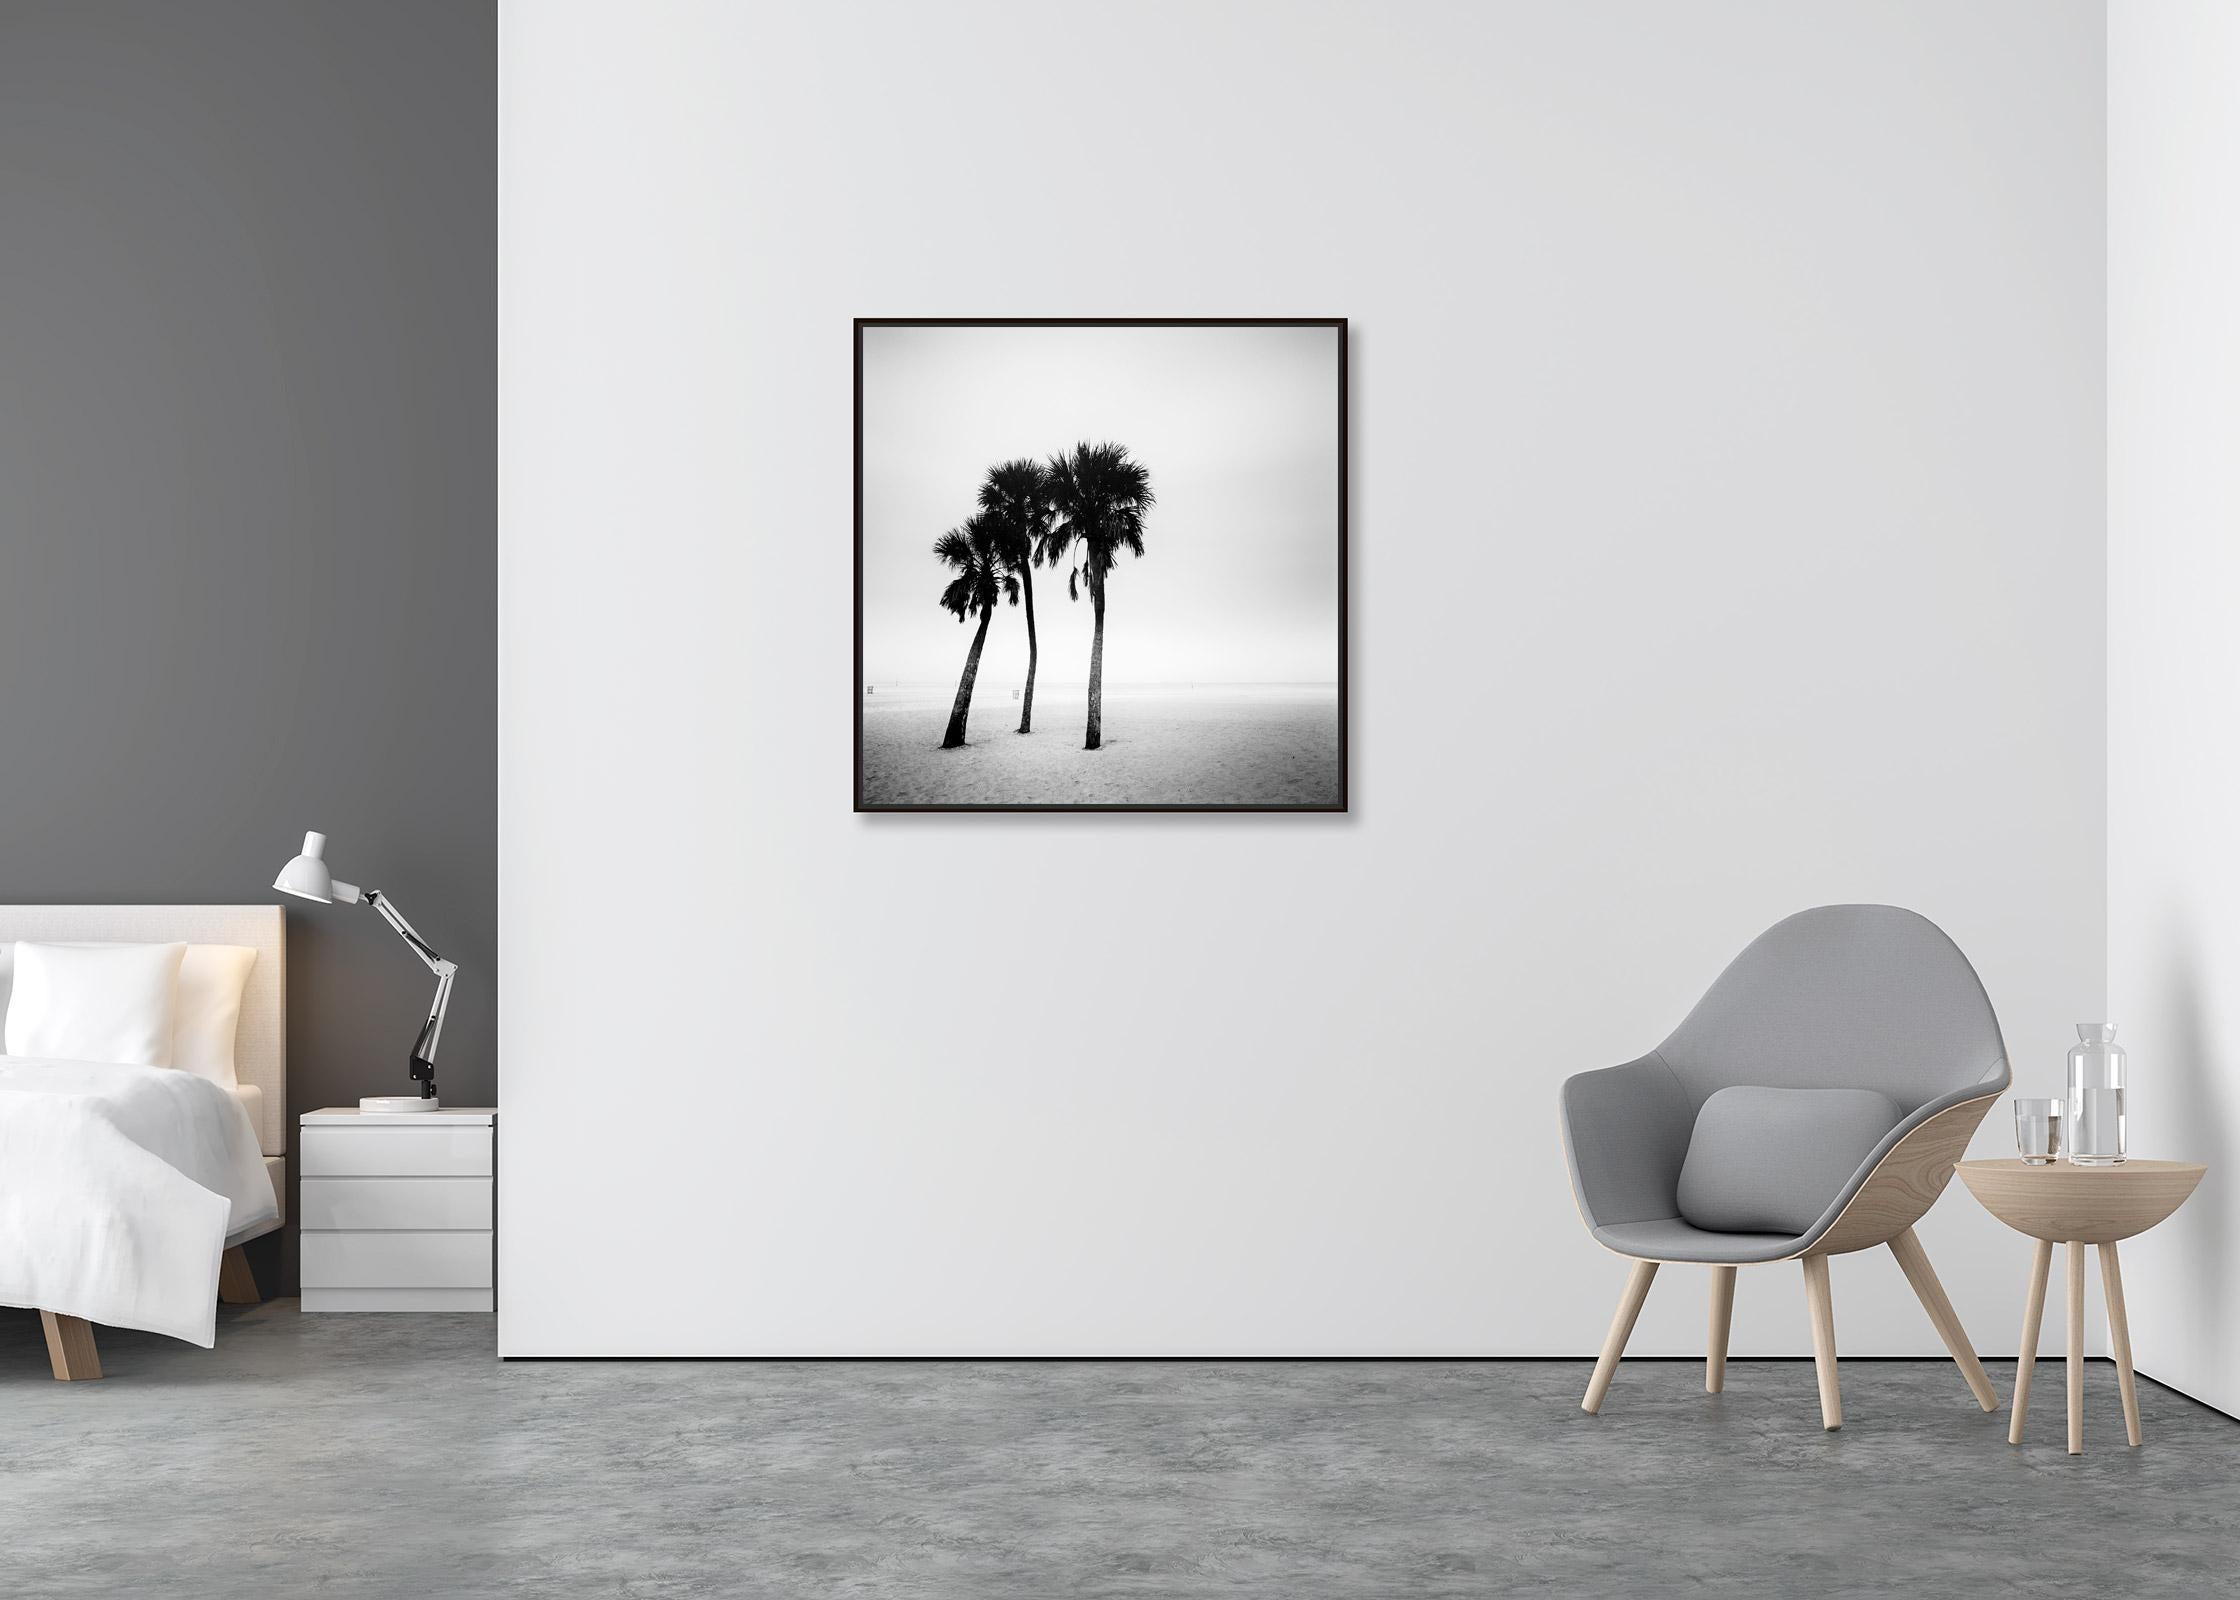 Palmiers, lonley beach, Floride, USA, photographie noir et blanc, paysage - Contemporain Photograph par Gerald Berghammer